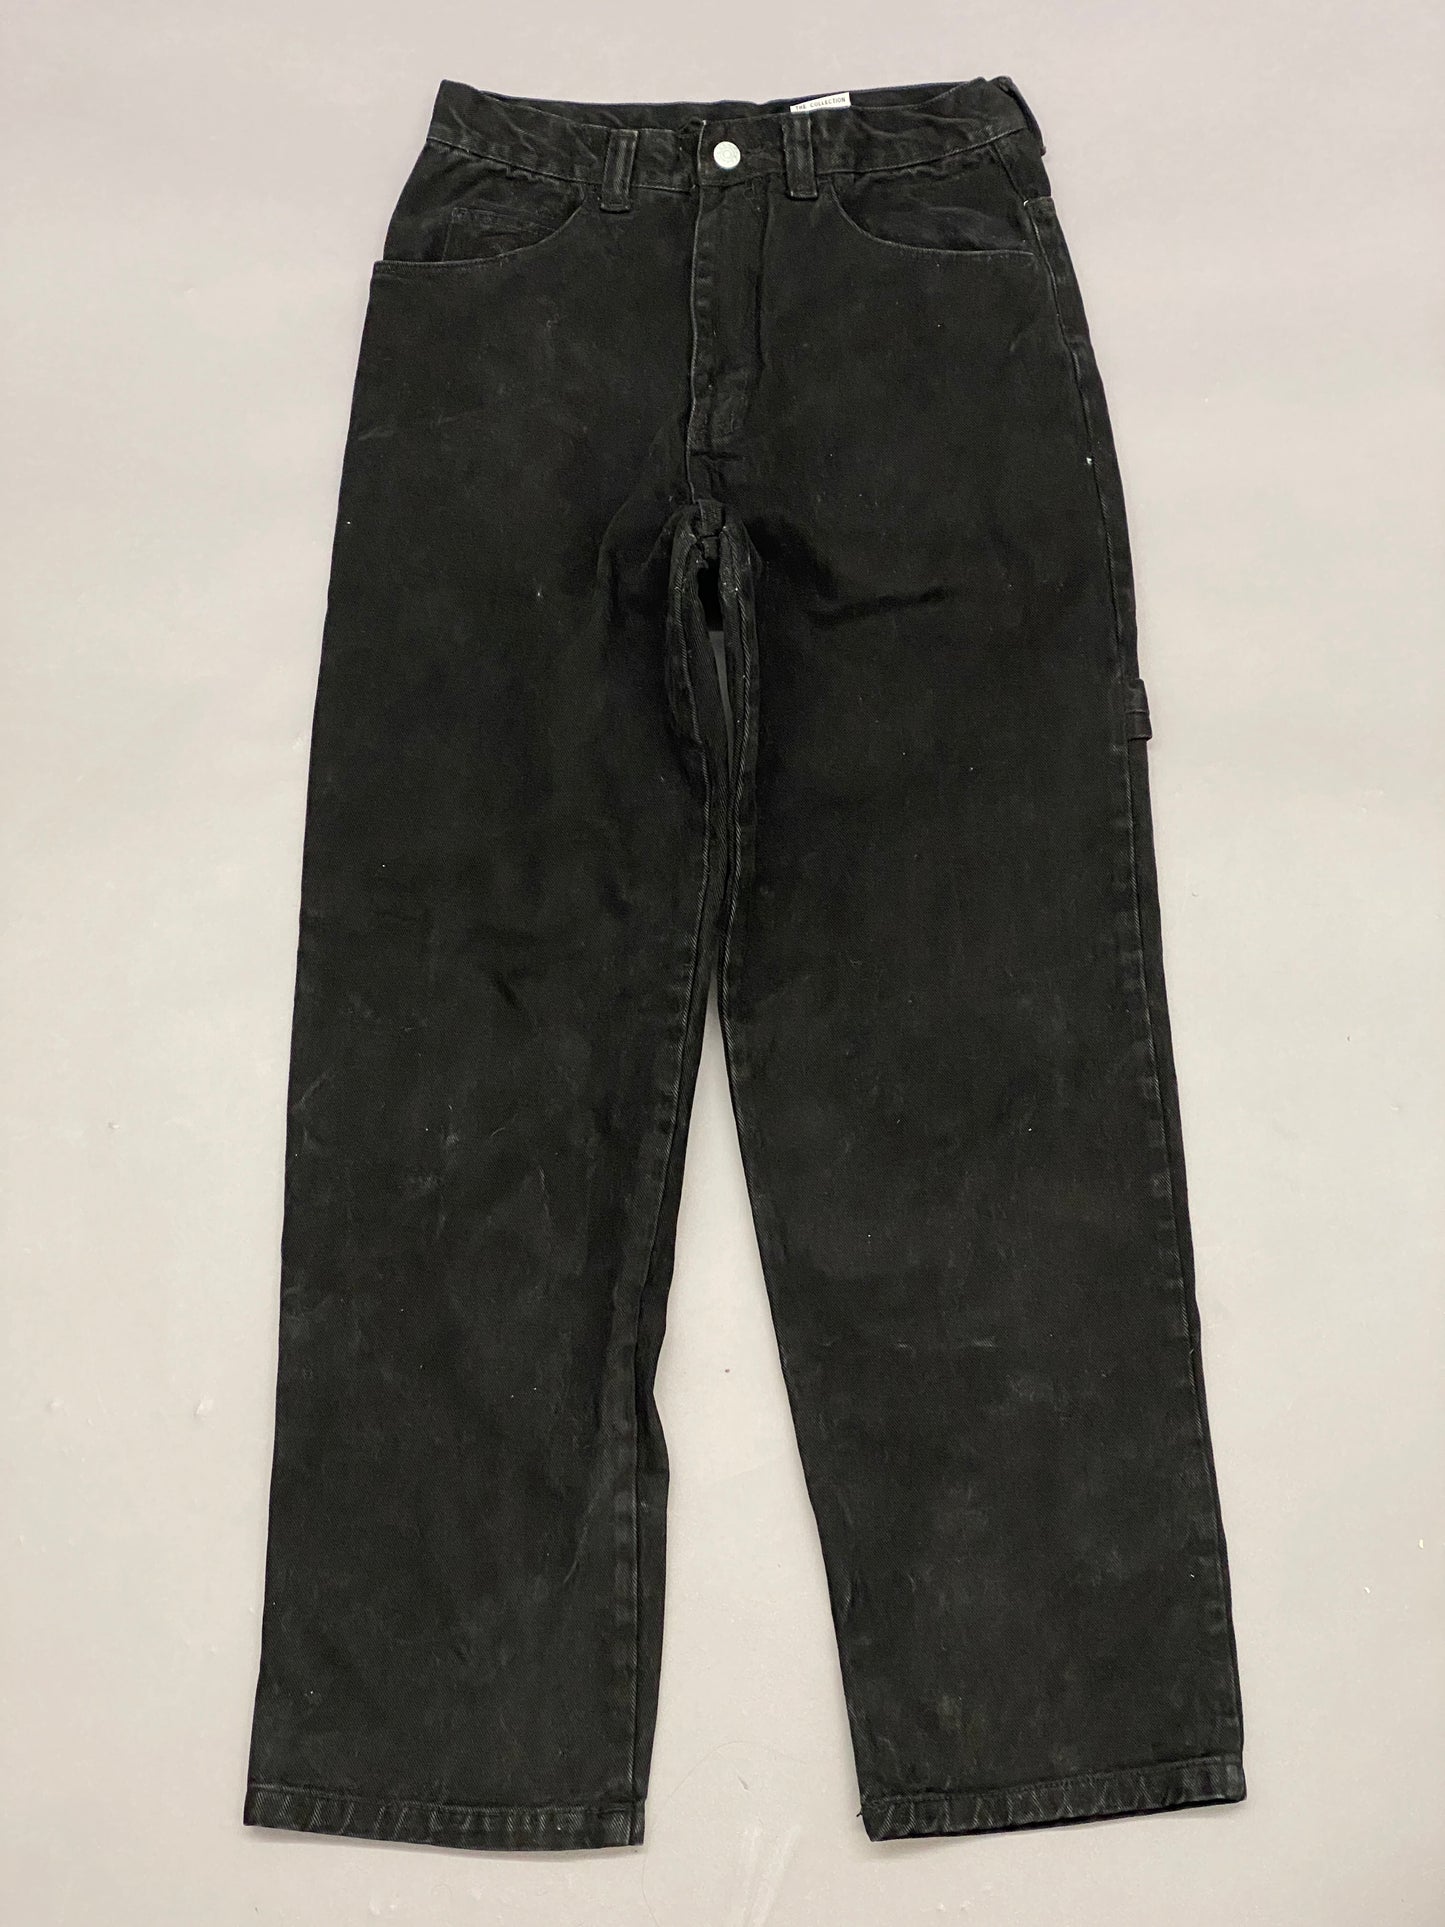 Fubu Carpenter Vintage Jeans - 30